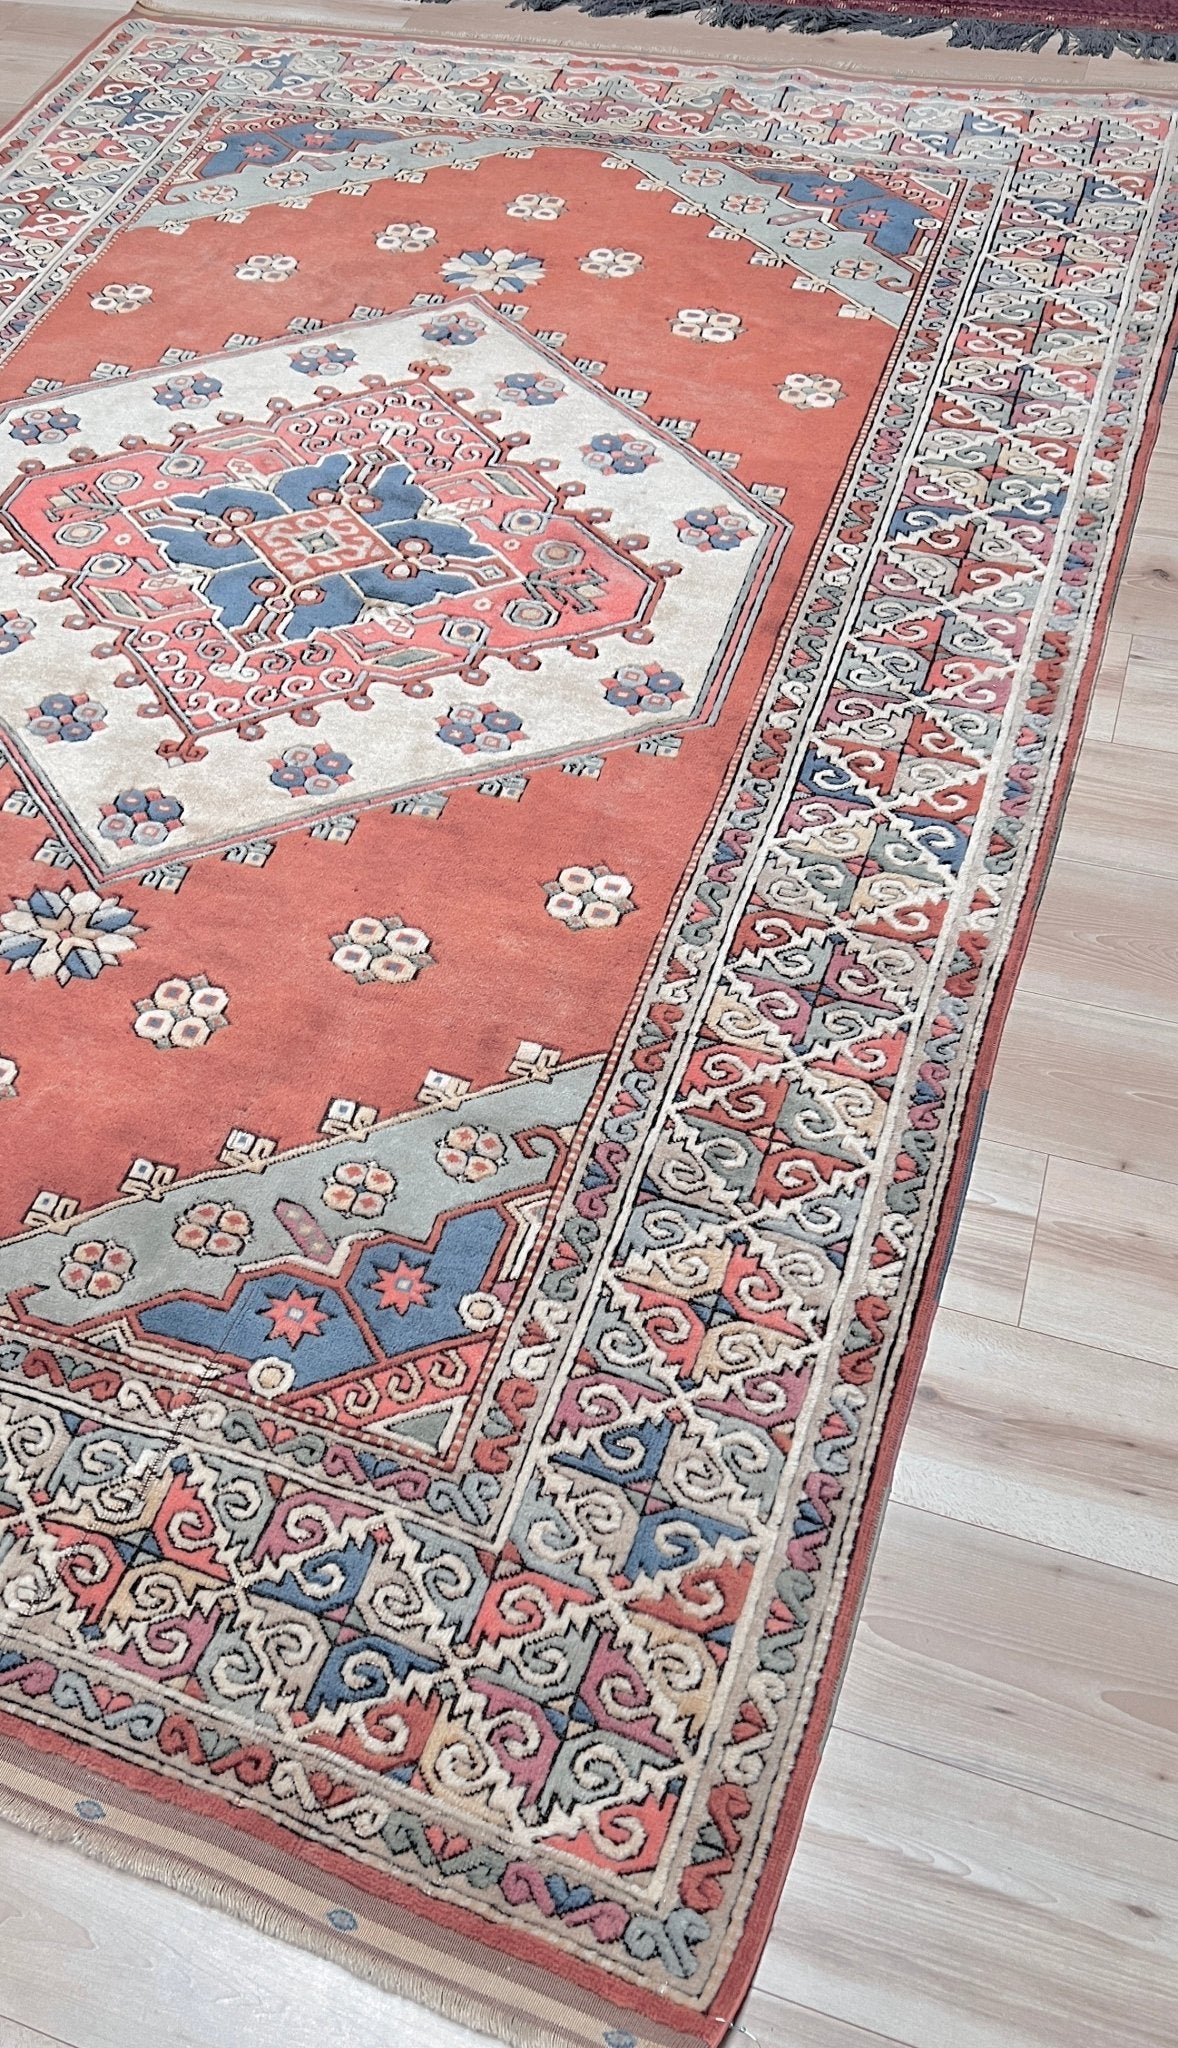 Vintage vibrant turkish rug for living room bedroom dining office. rug shop San Francisco Bay Area. Buy rug online